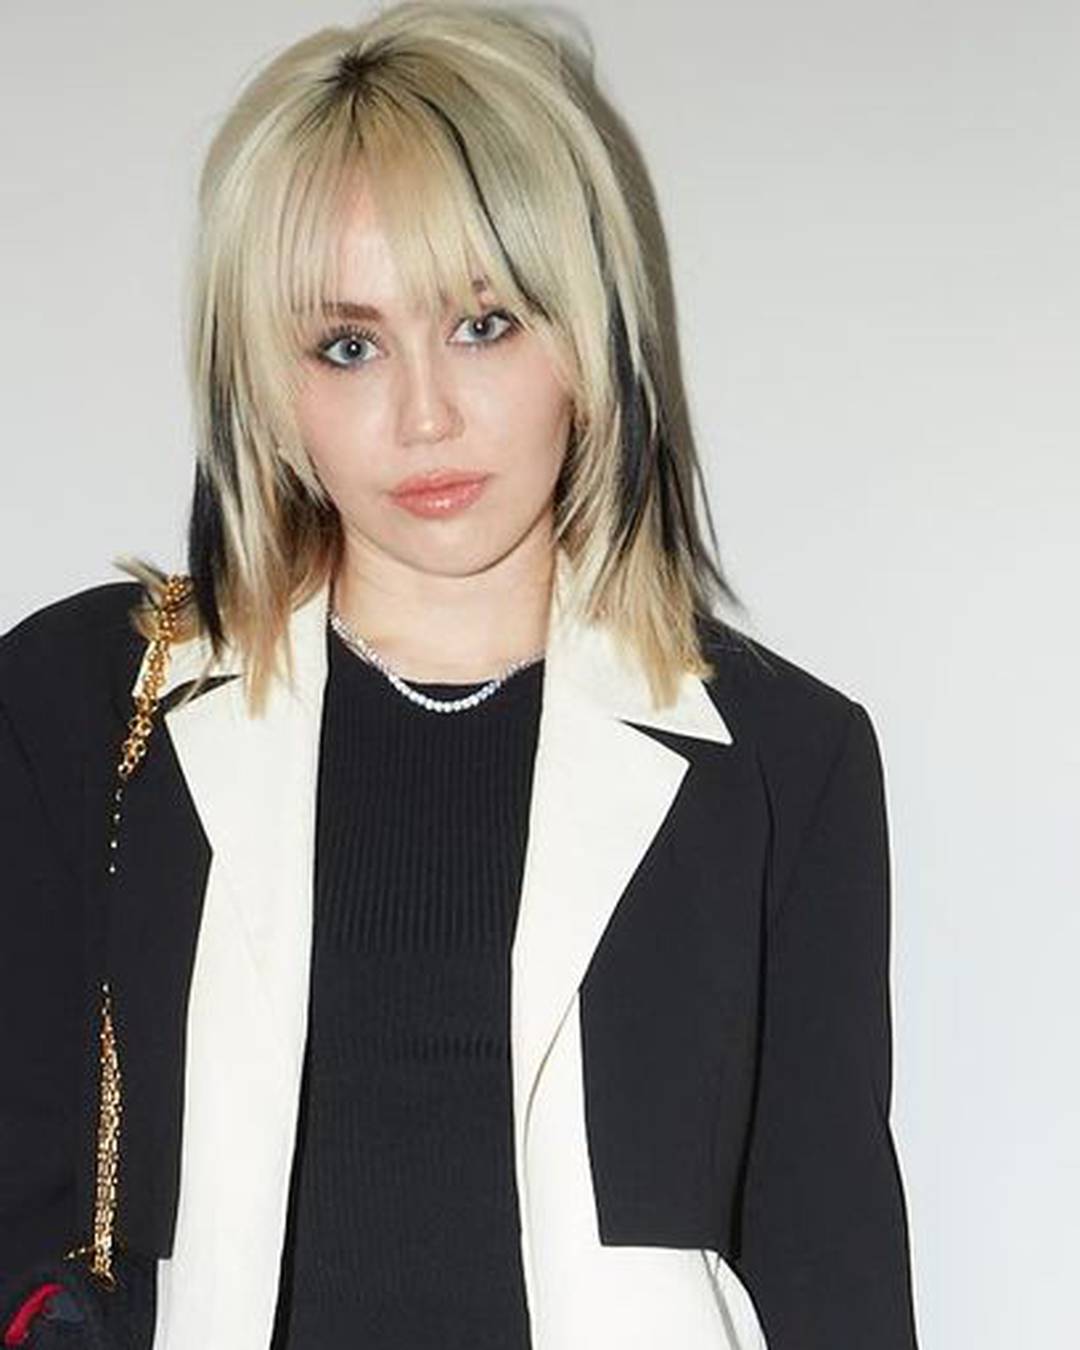 Miley Cyrus u novoj pjesmi priča o propalom braku: Objavila ju na rođendan bivšeg supruga